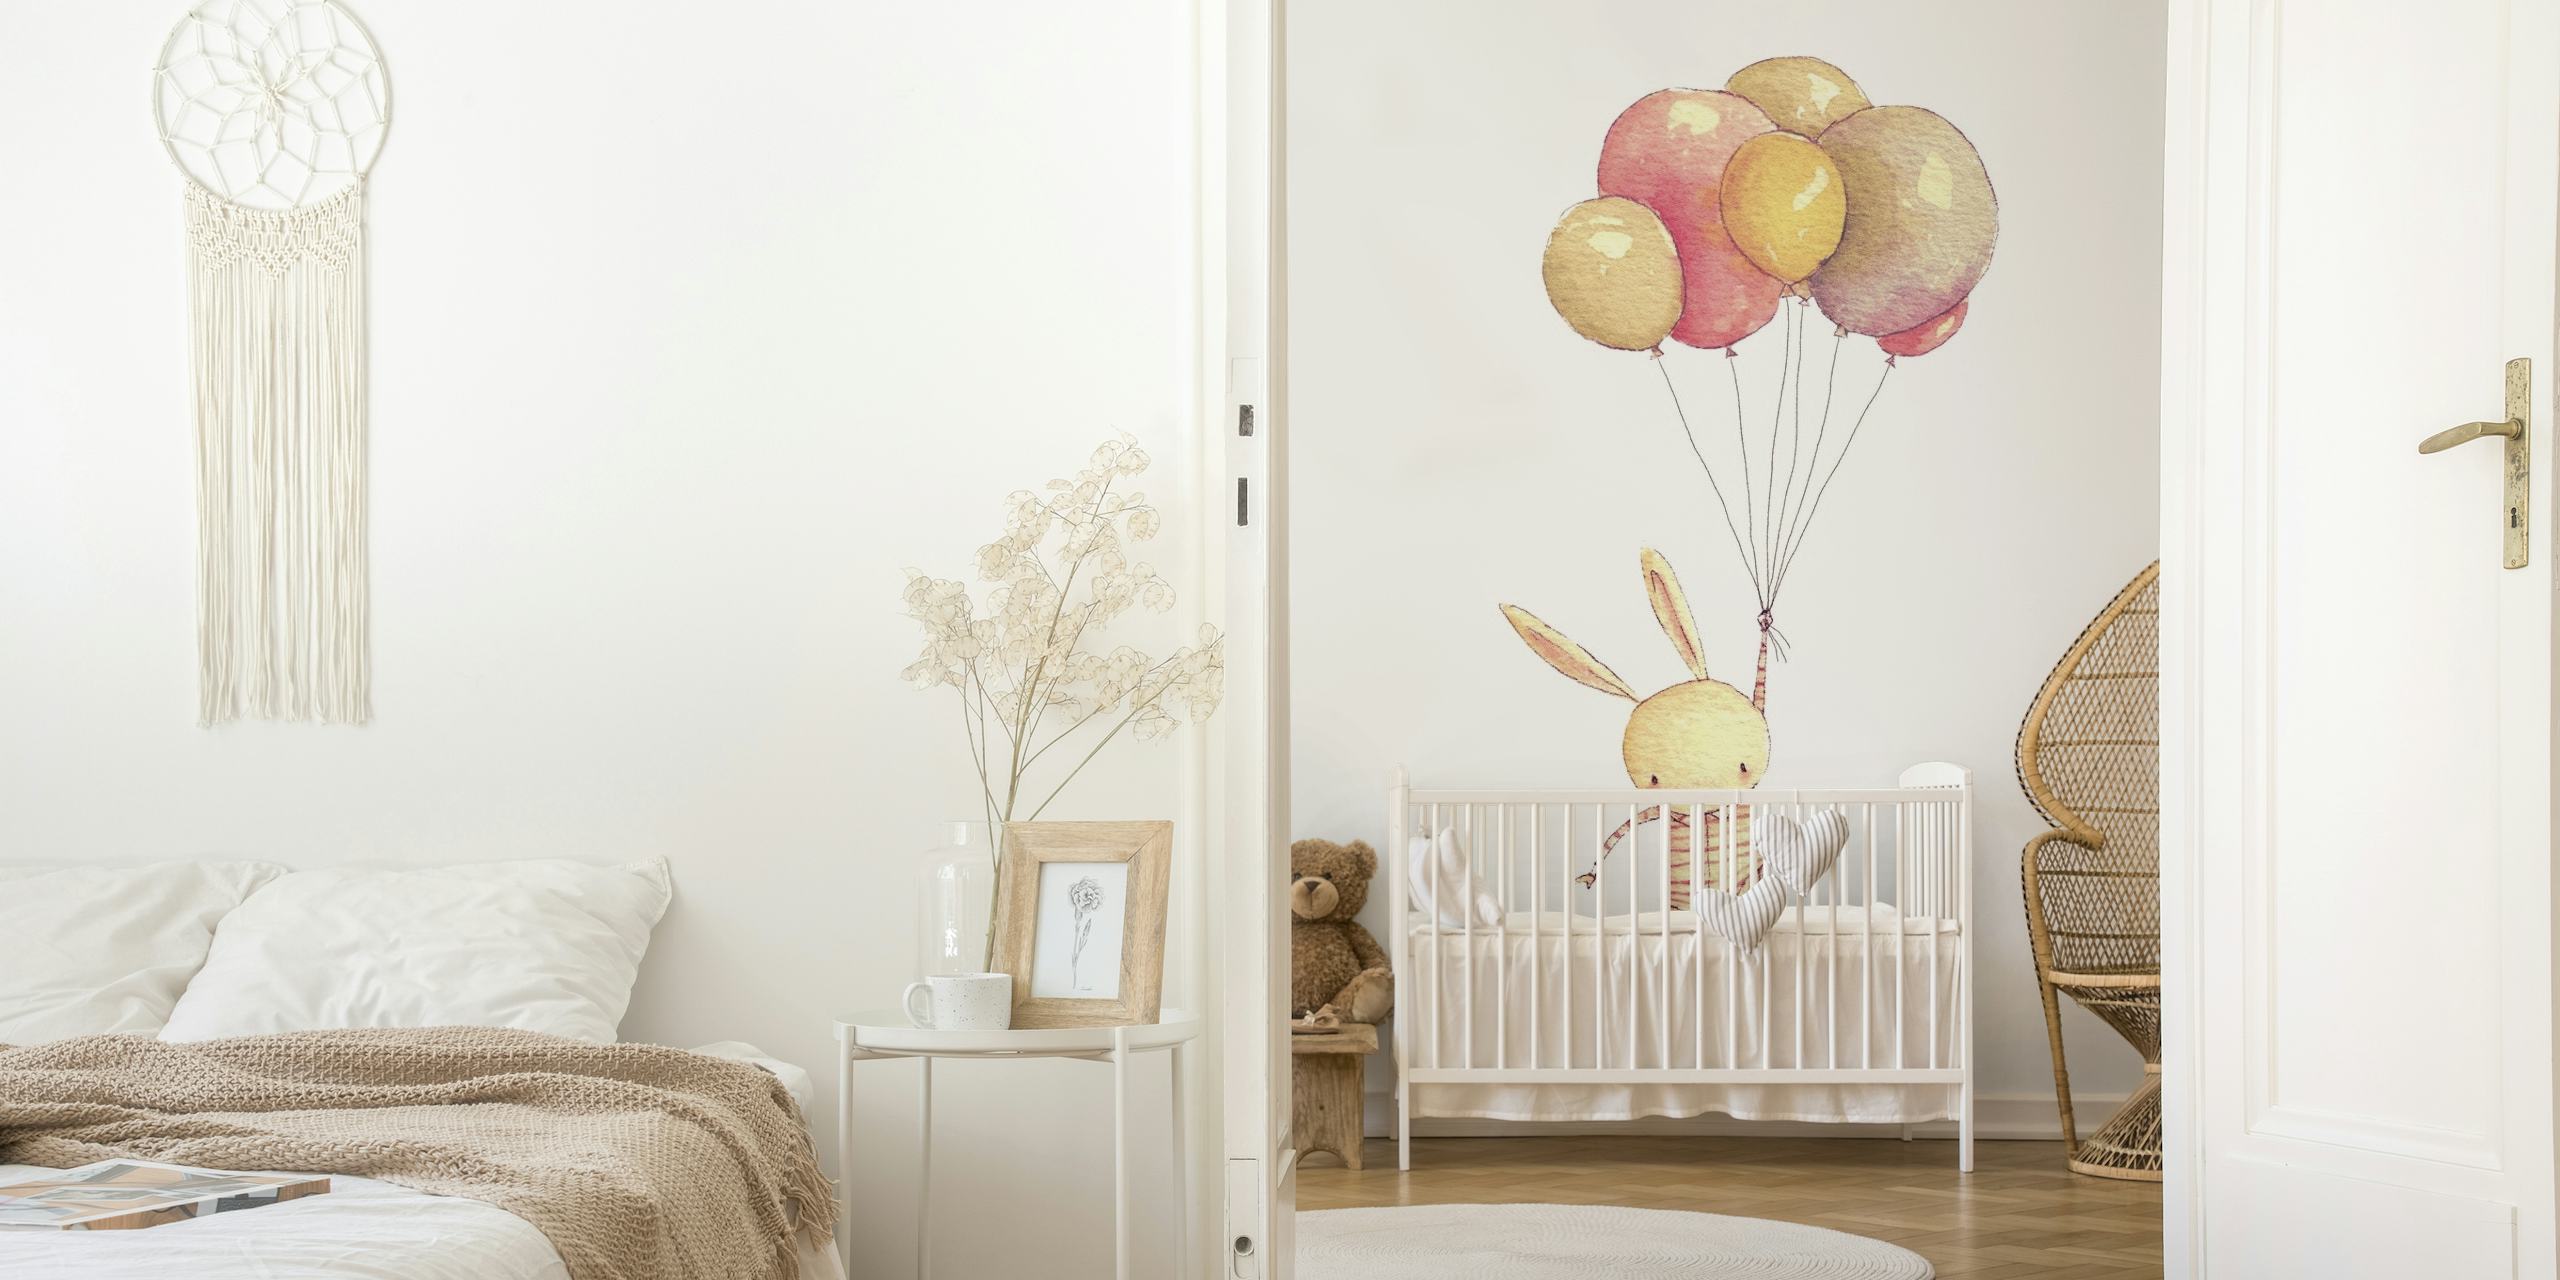 Ilustración de un conejito atado a globos de colores pastel flotando hacia arriba en un mural de pared.